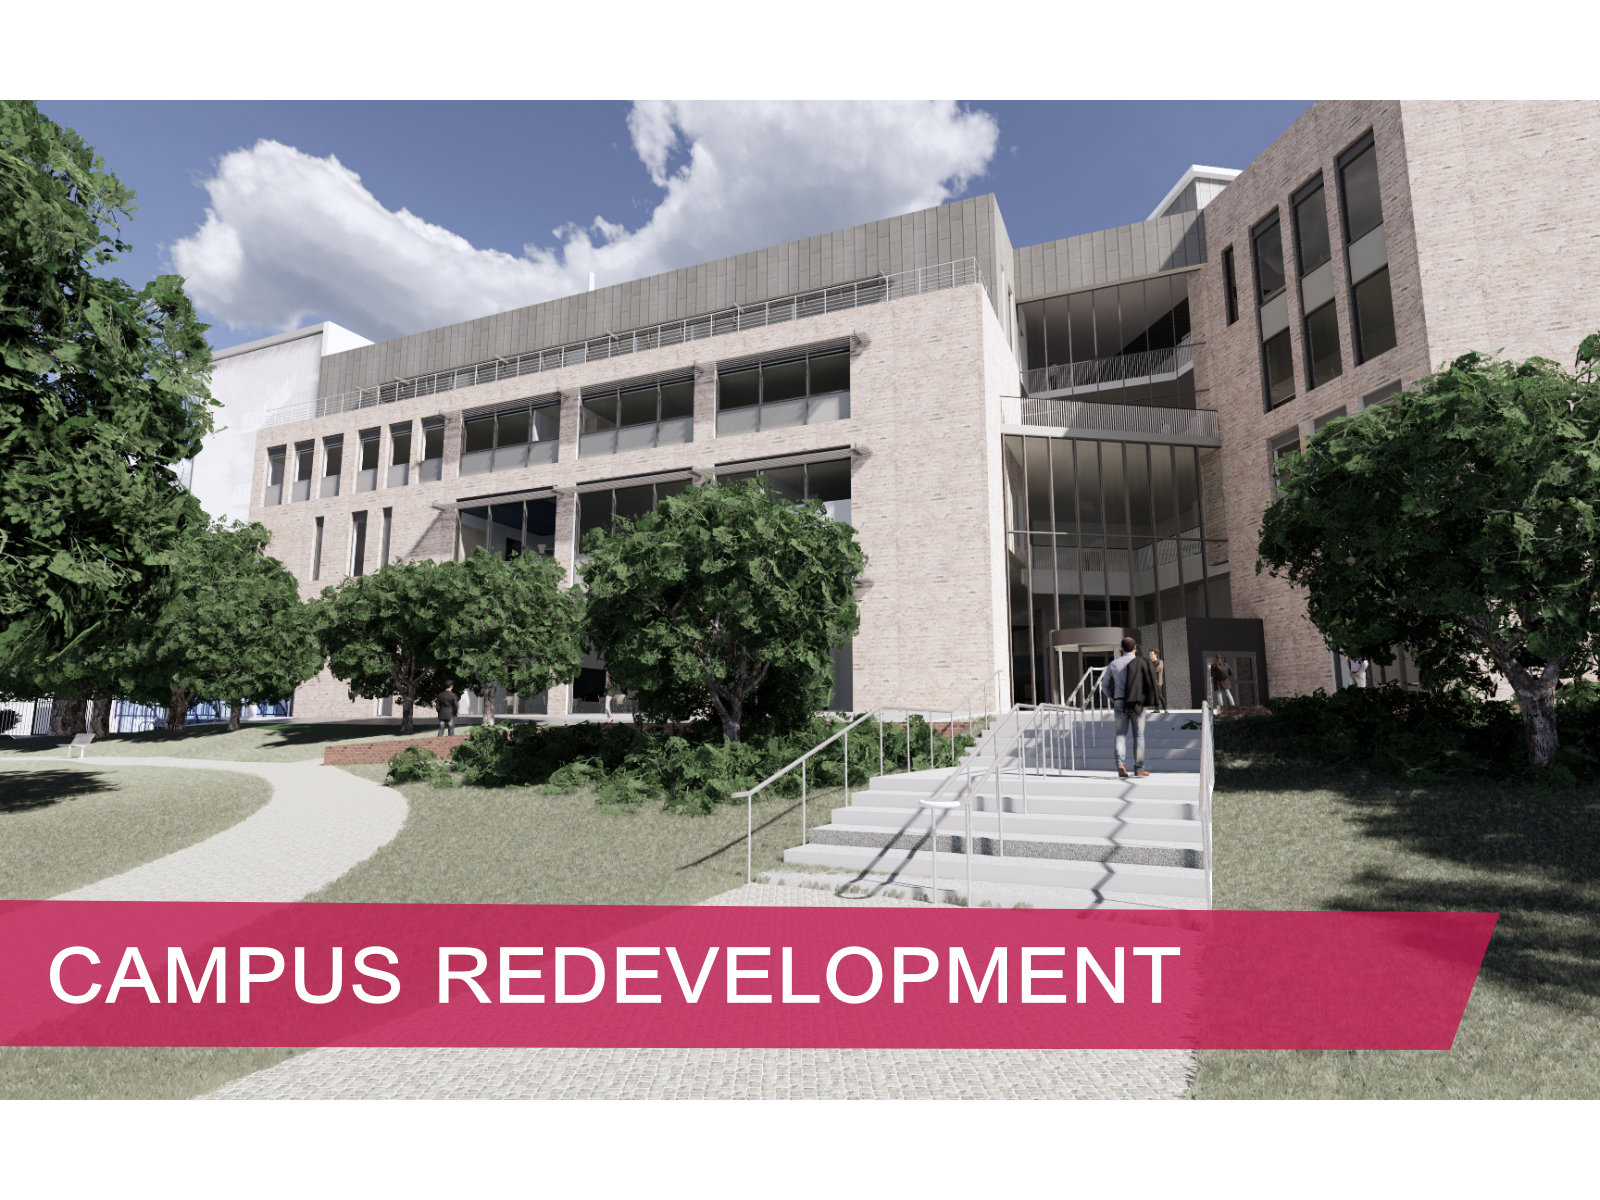 Campus redevelopment